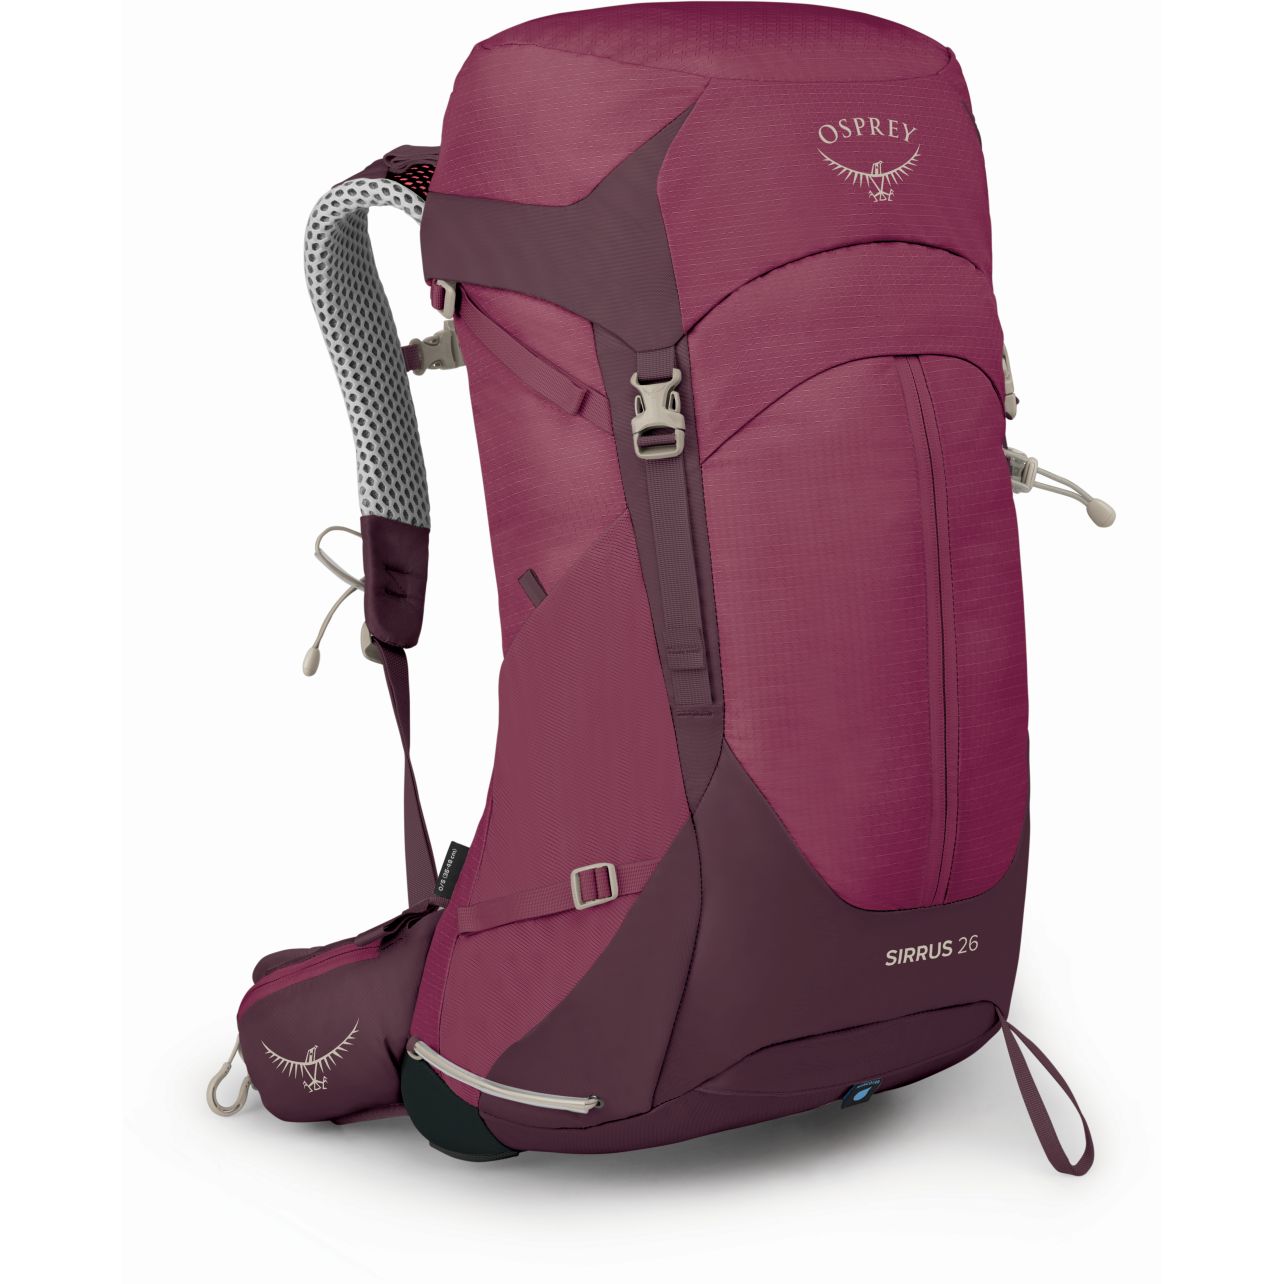 Produktbild von Osprey Sirrus 26 Rucksack Damen - Elderberry Purple/Chiru Tan